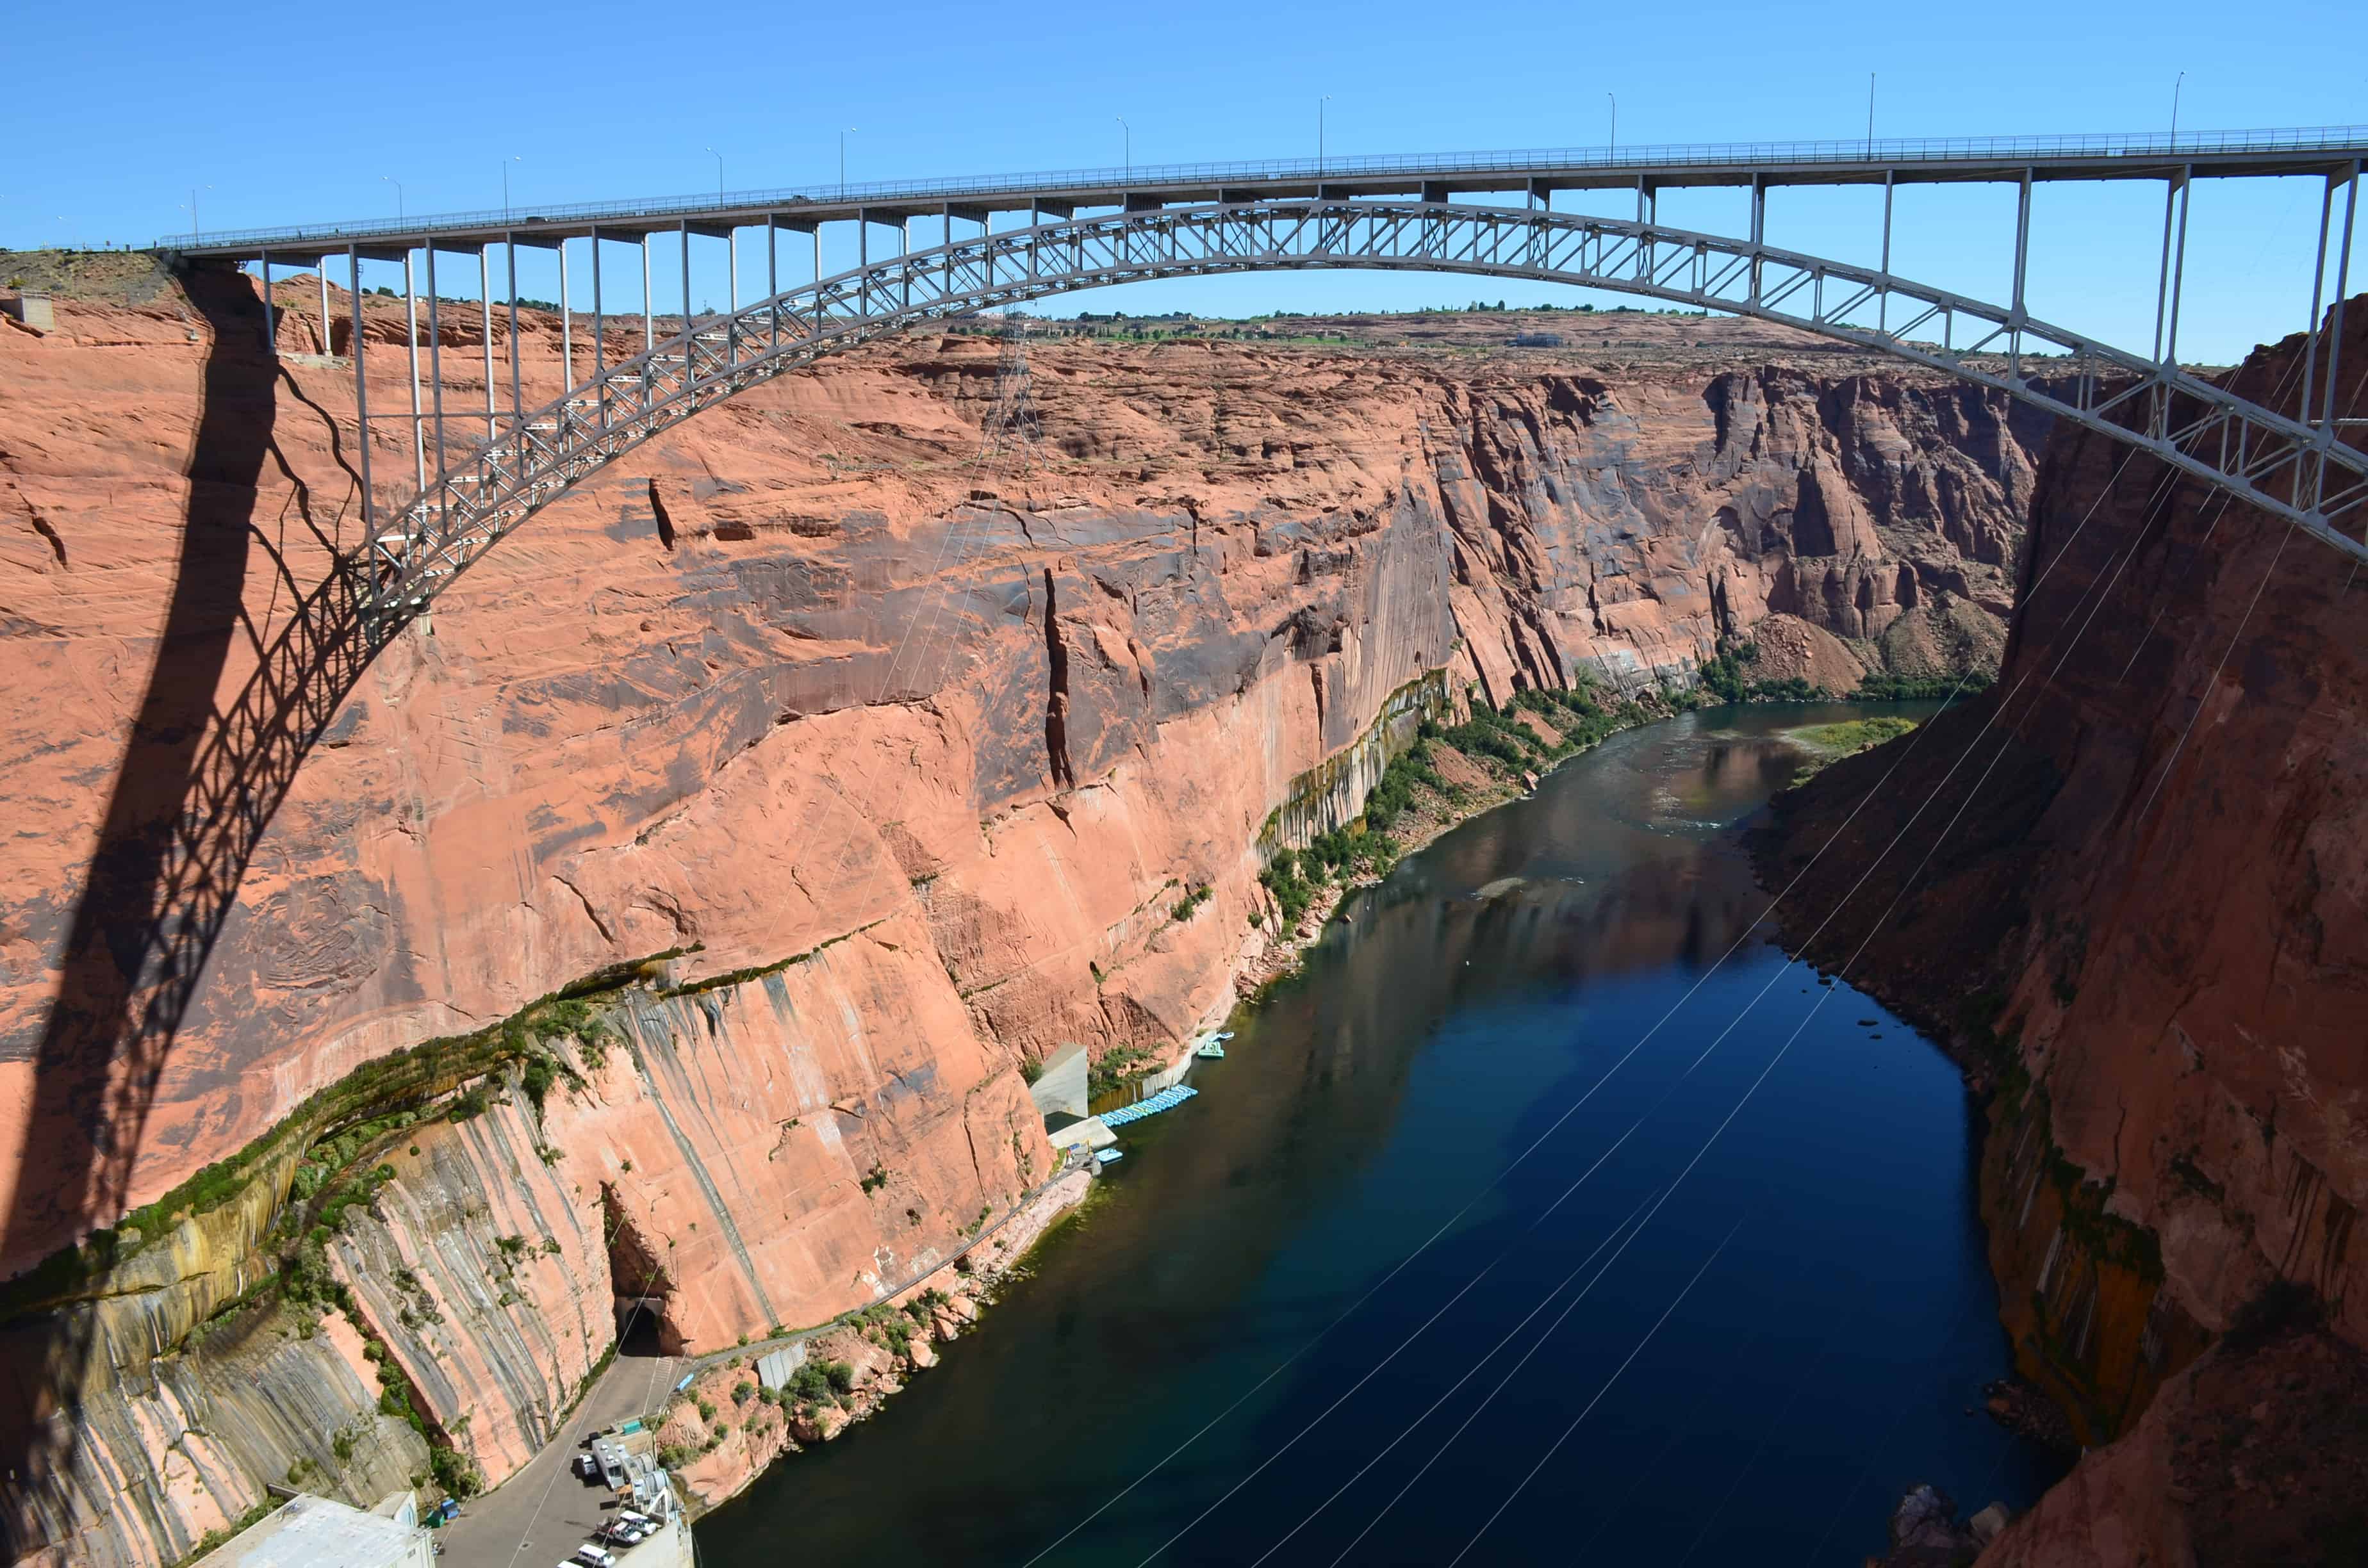 The bridge and the Colorado River